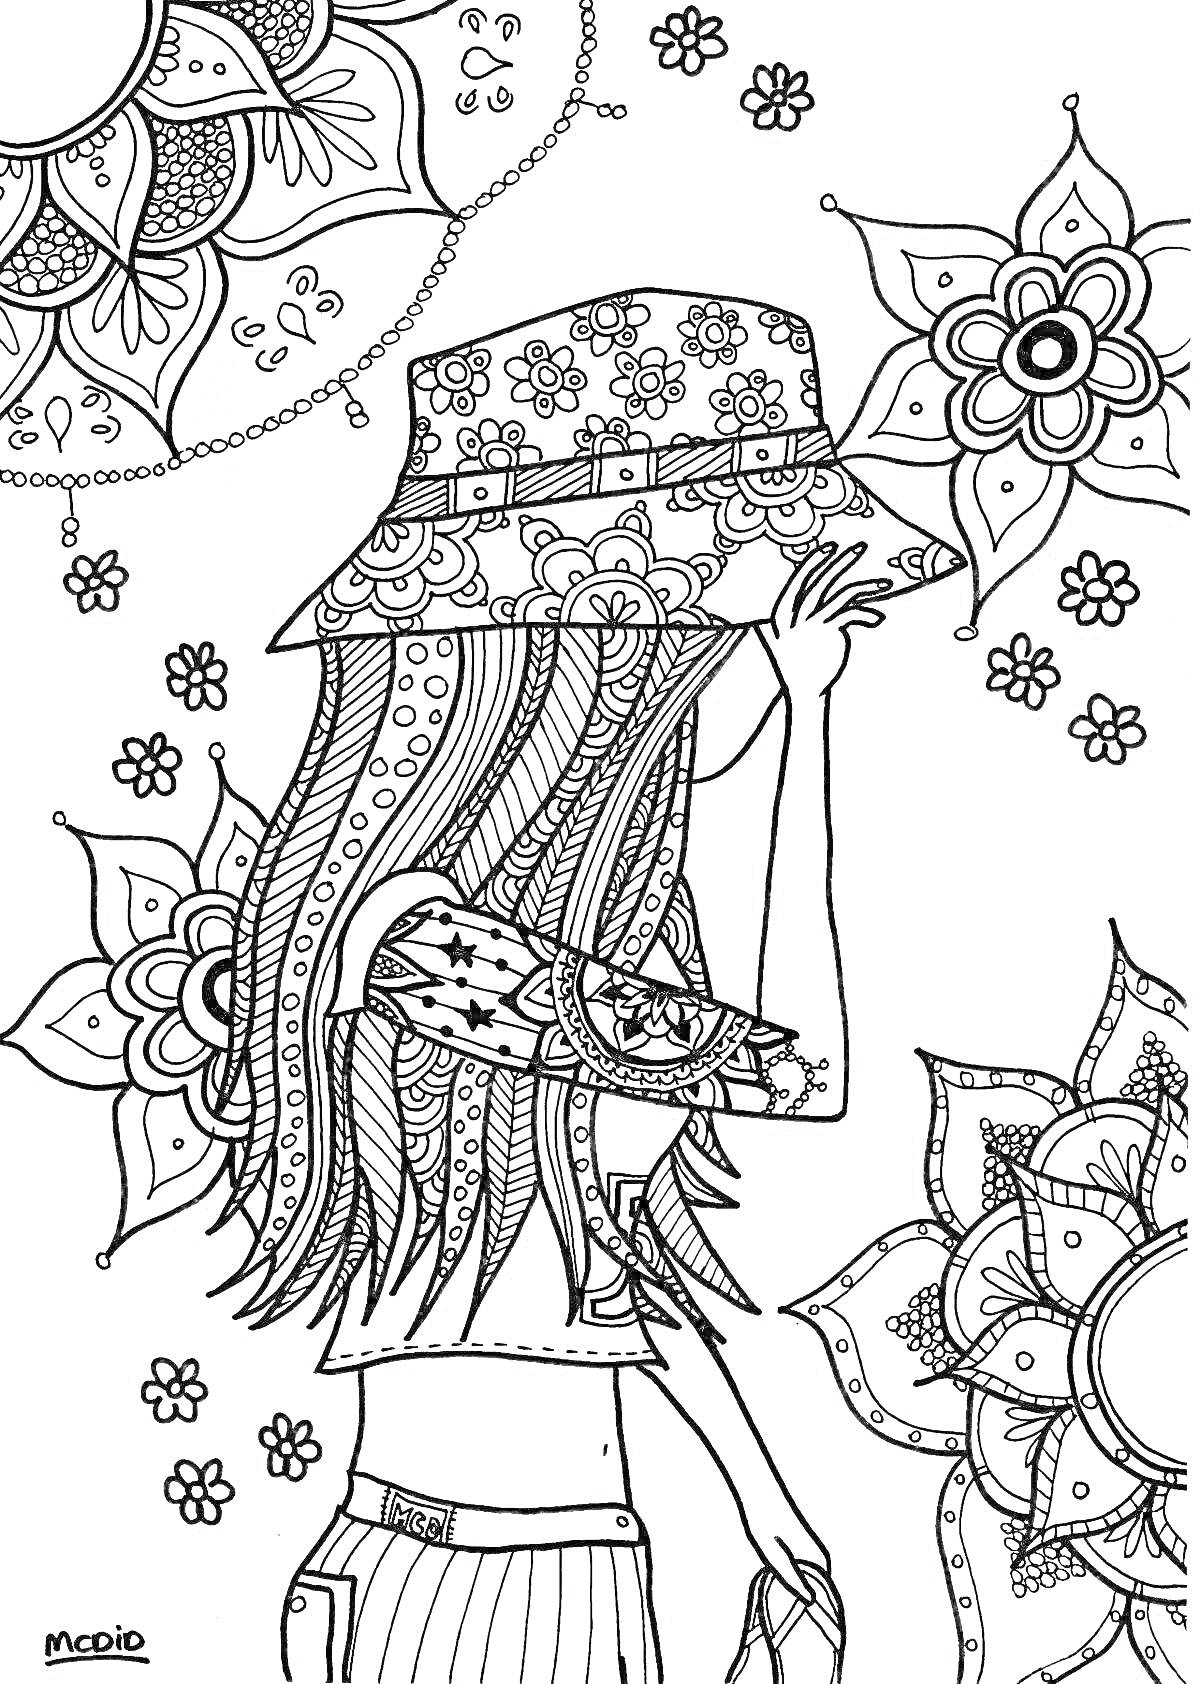 Девушка-хиппи в шляпе с цветочным орнаментом, замысловатый фон с мандалами и маленькими цветами